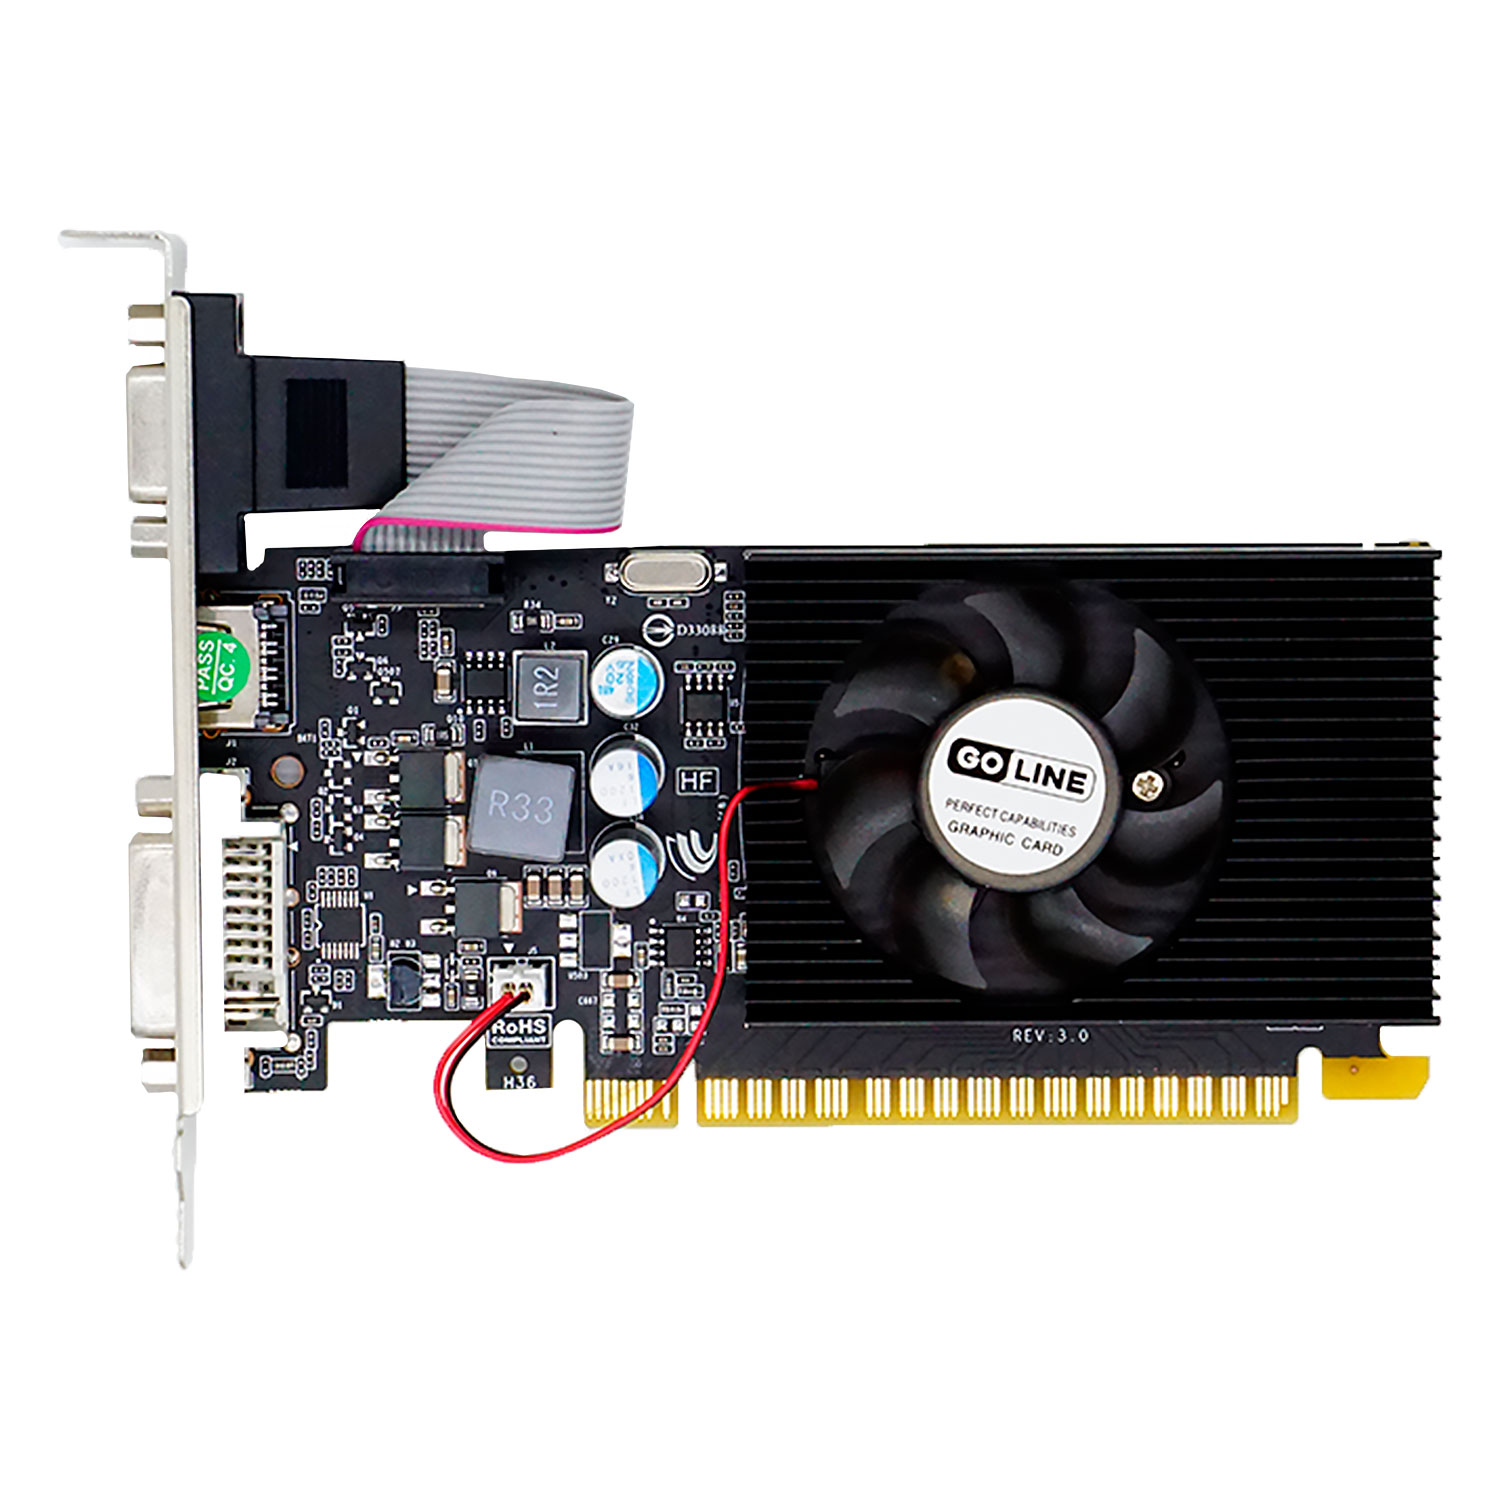 Placa de Vídeo Goline GL GT210 NVIDIA GeForce GT210 1GB GDDR3 - GL-210-1GB-D3 (1 Ano de Garantia)